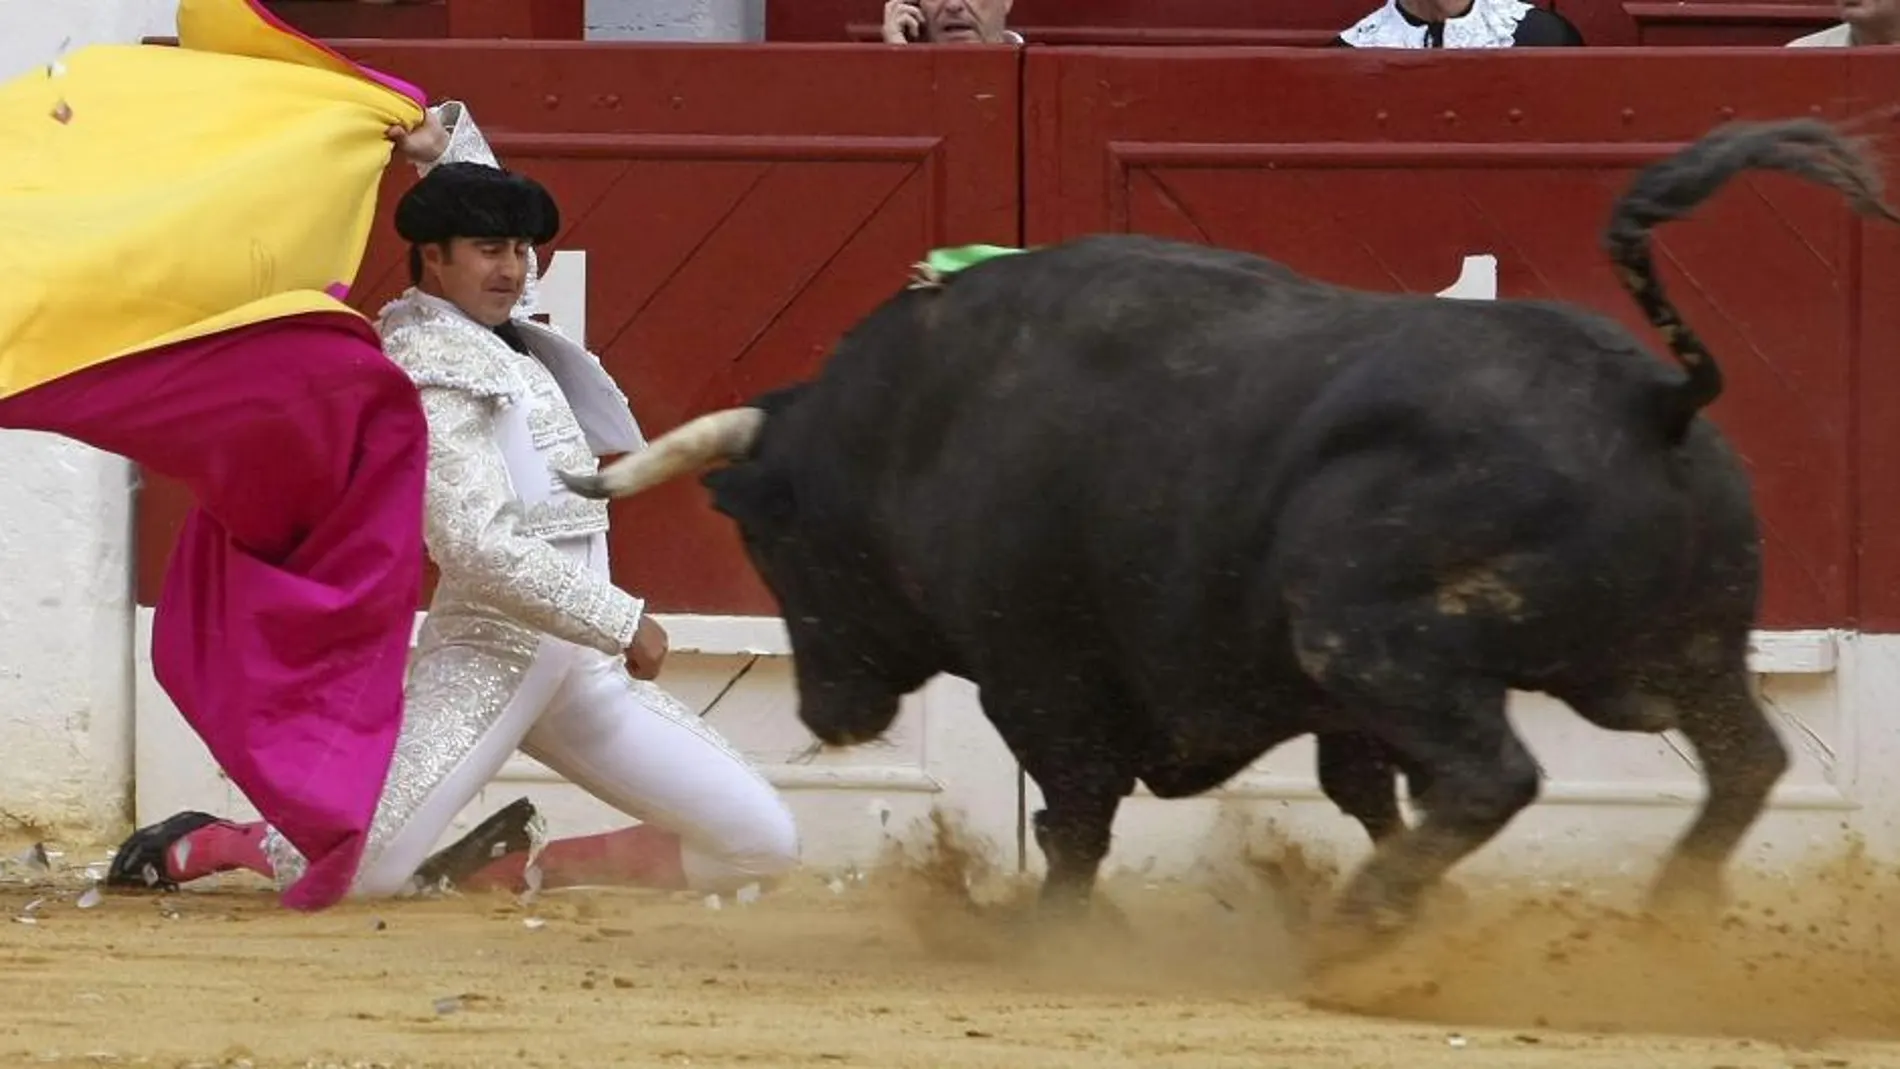 El Fandi recibe con una larga a uno de sus toros hoy en Alicante